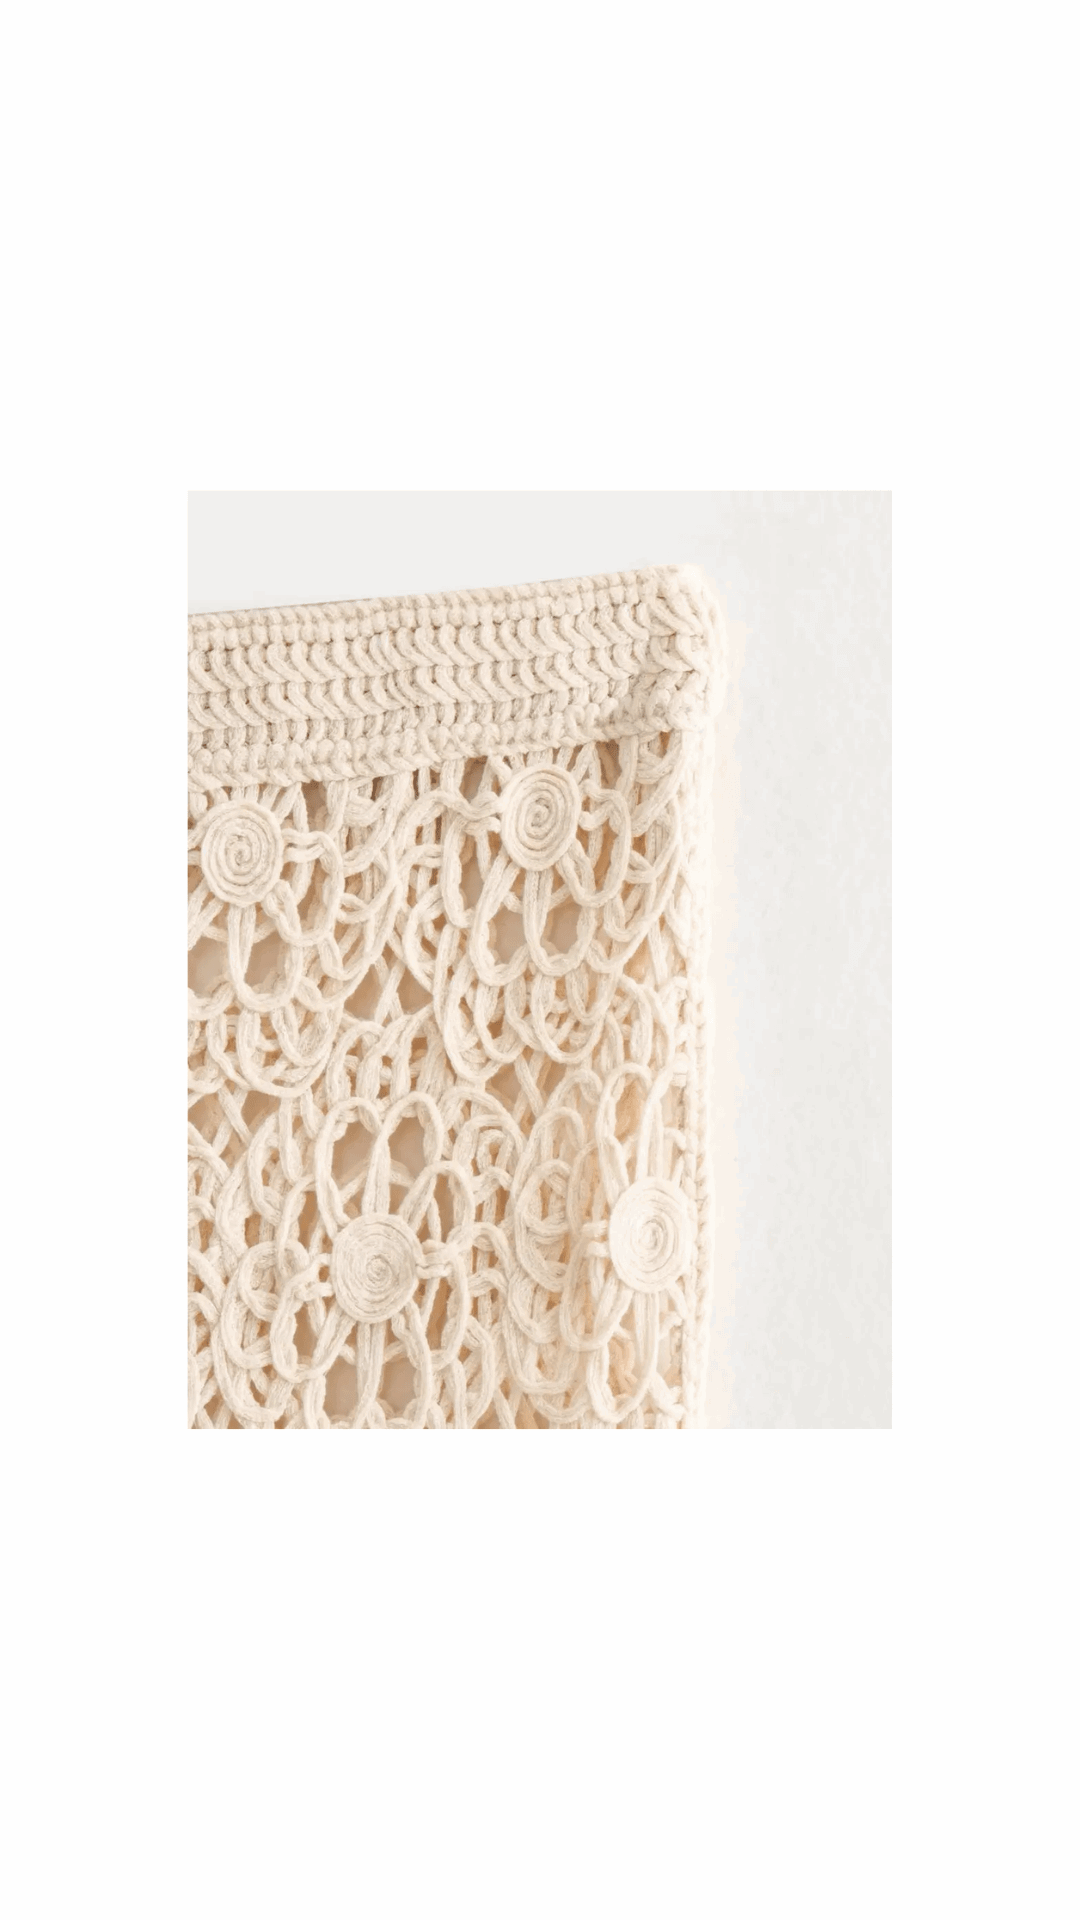 Crochet Knit Tassel Long Sleeve Crop Top and High Waisted Maxi Skirt